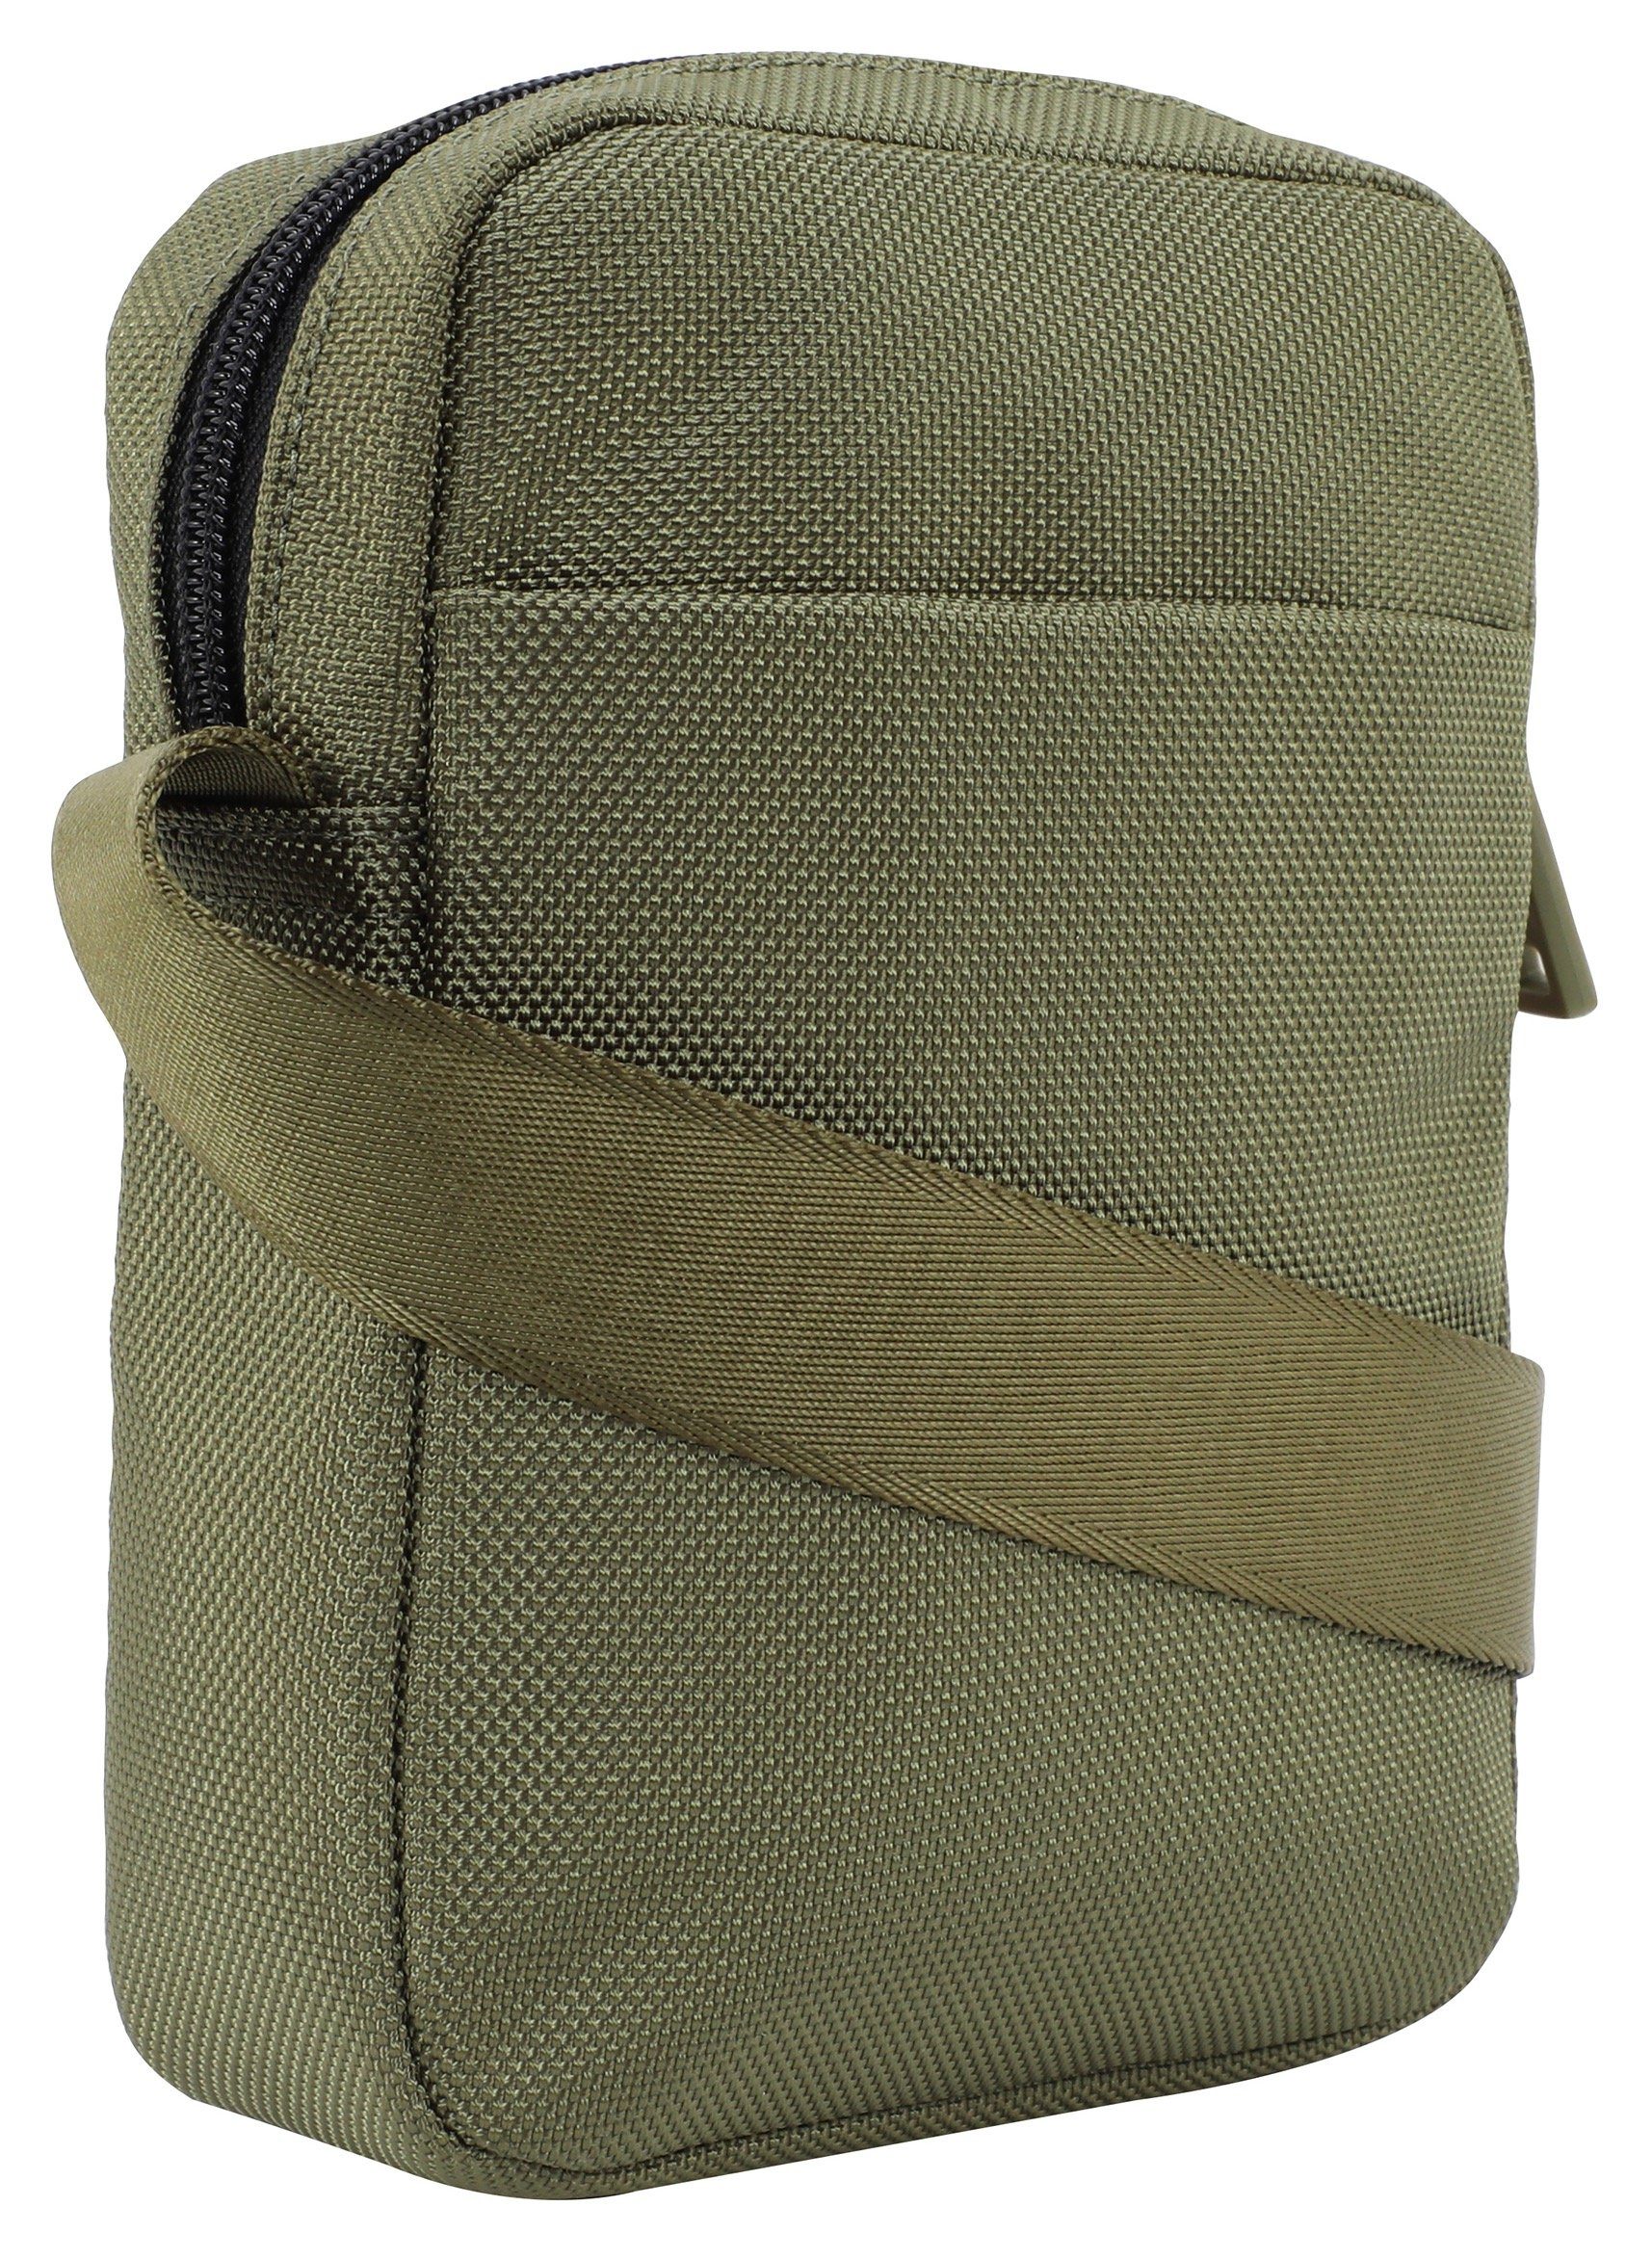 Joop Jeans Umhängetasche praktischen dunkelgrün modica xsvz, im rafael Design shoulderbag